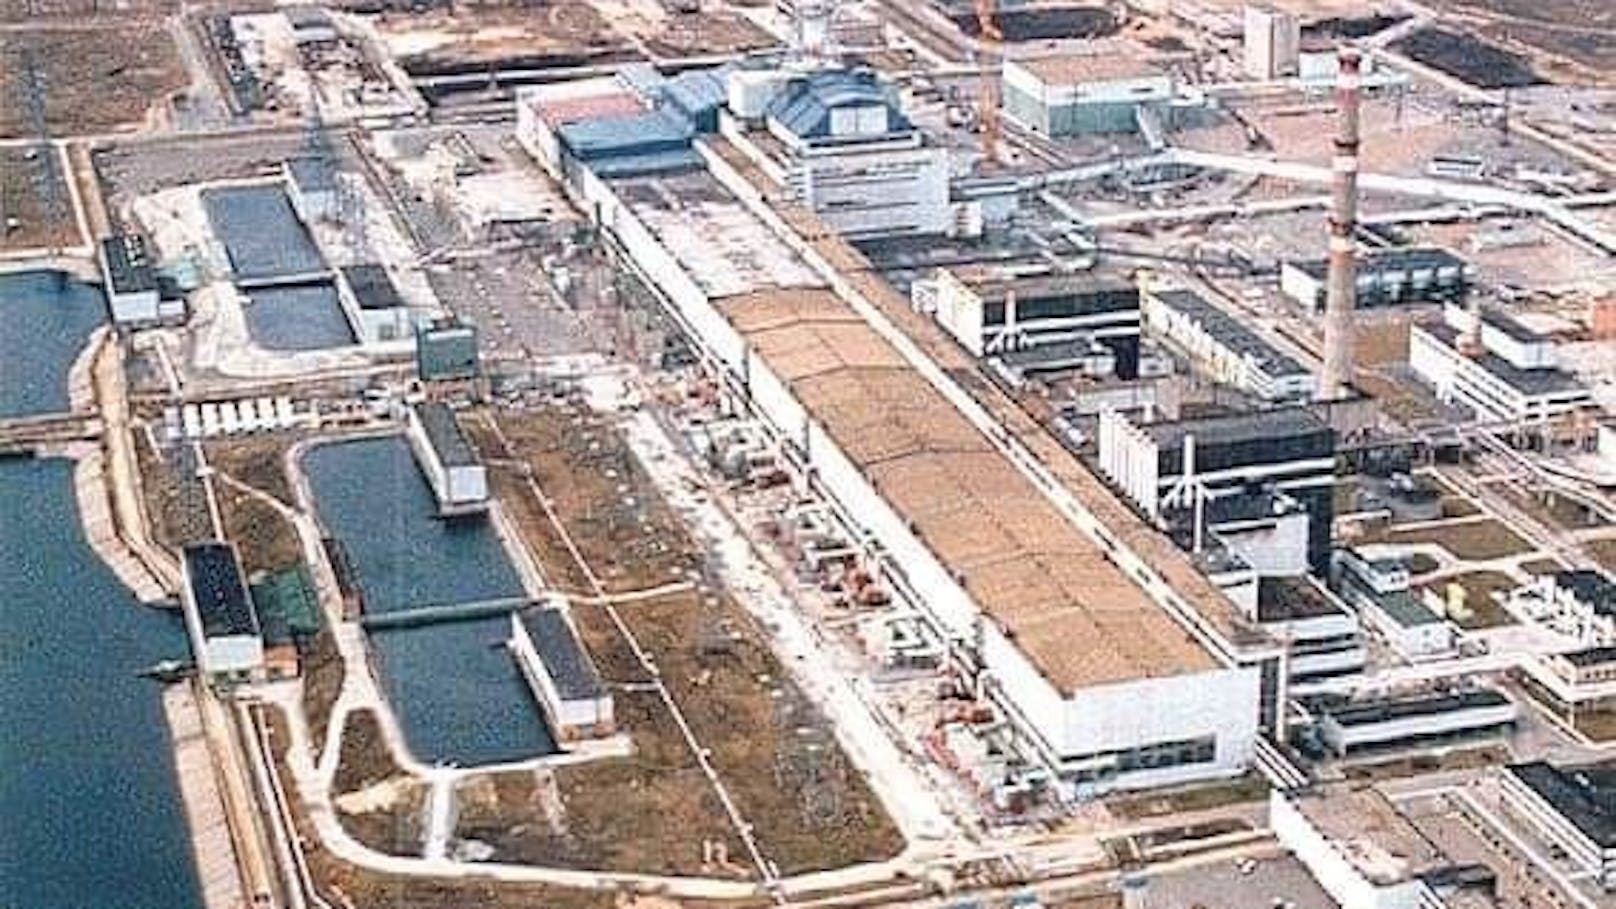 Die Lage in der Kraftwerksruine Tschernobyl soll sich laufend verschlechtern.